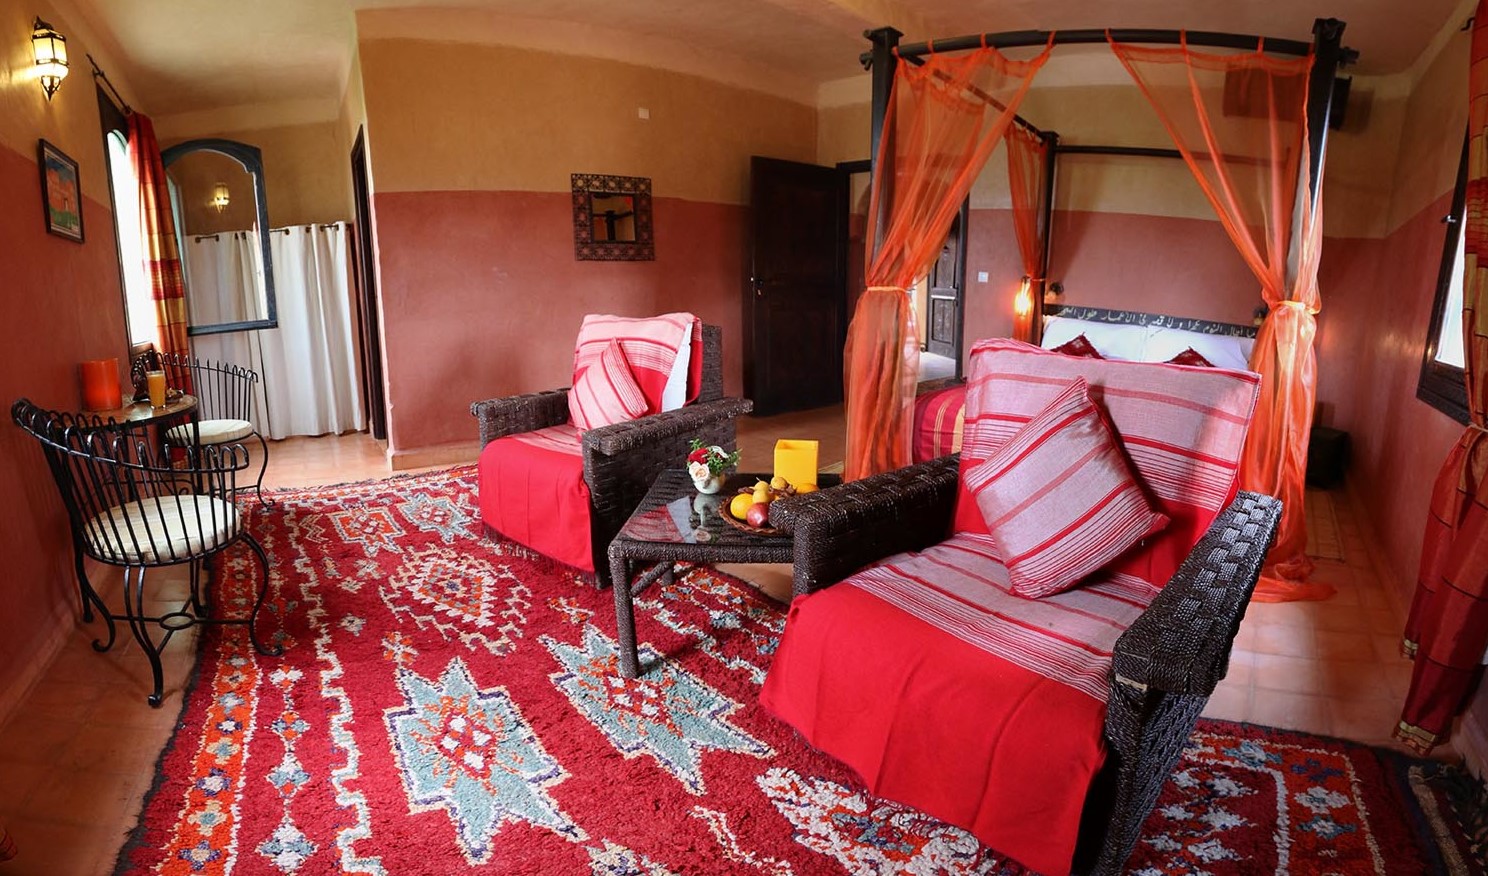 Для оформления спальни в марокканском стиле можно использовать красный ковер с орнаментами и балдахин для кровати